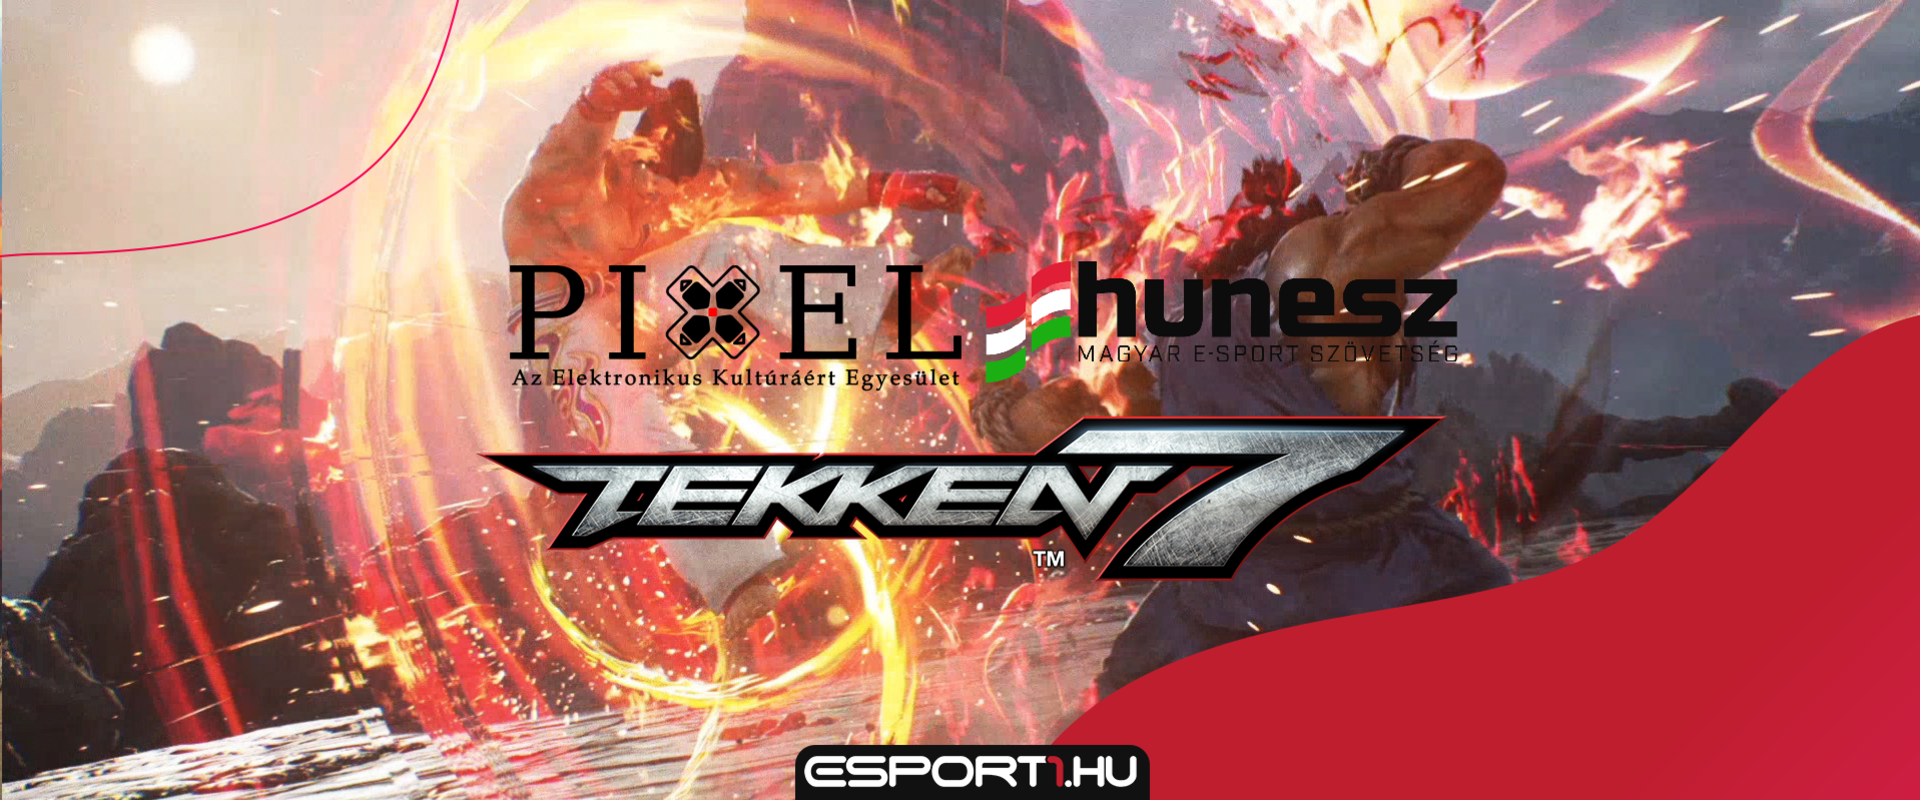 Amatőr Tekken 7 versenyt rendeznek Gyönyösön, a főnyeremény egy PS4!